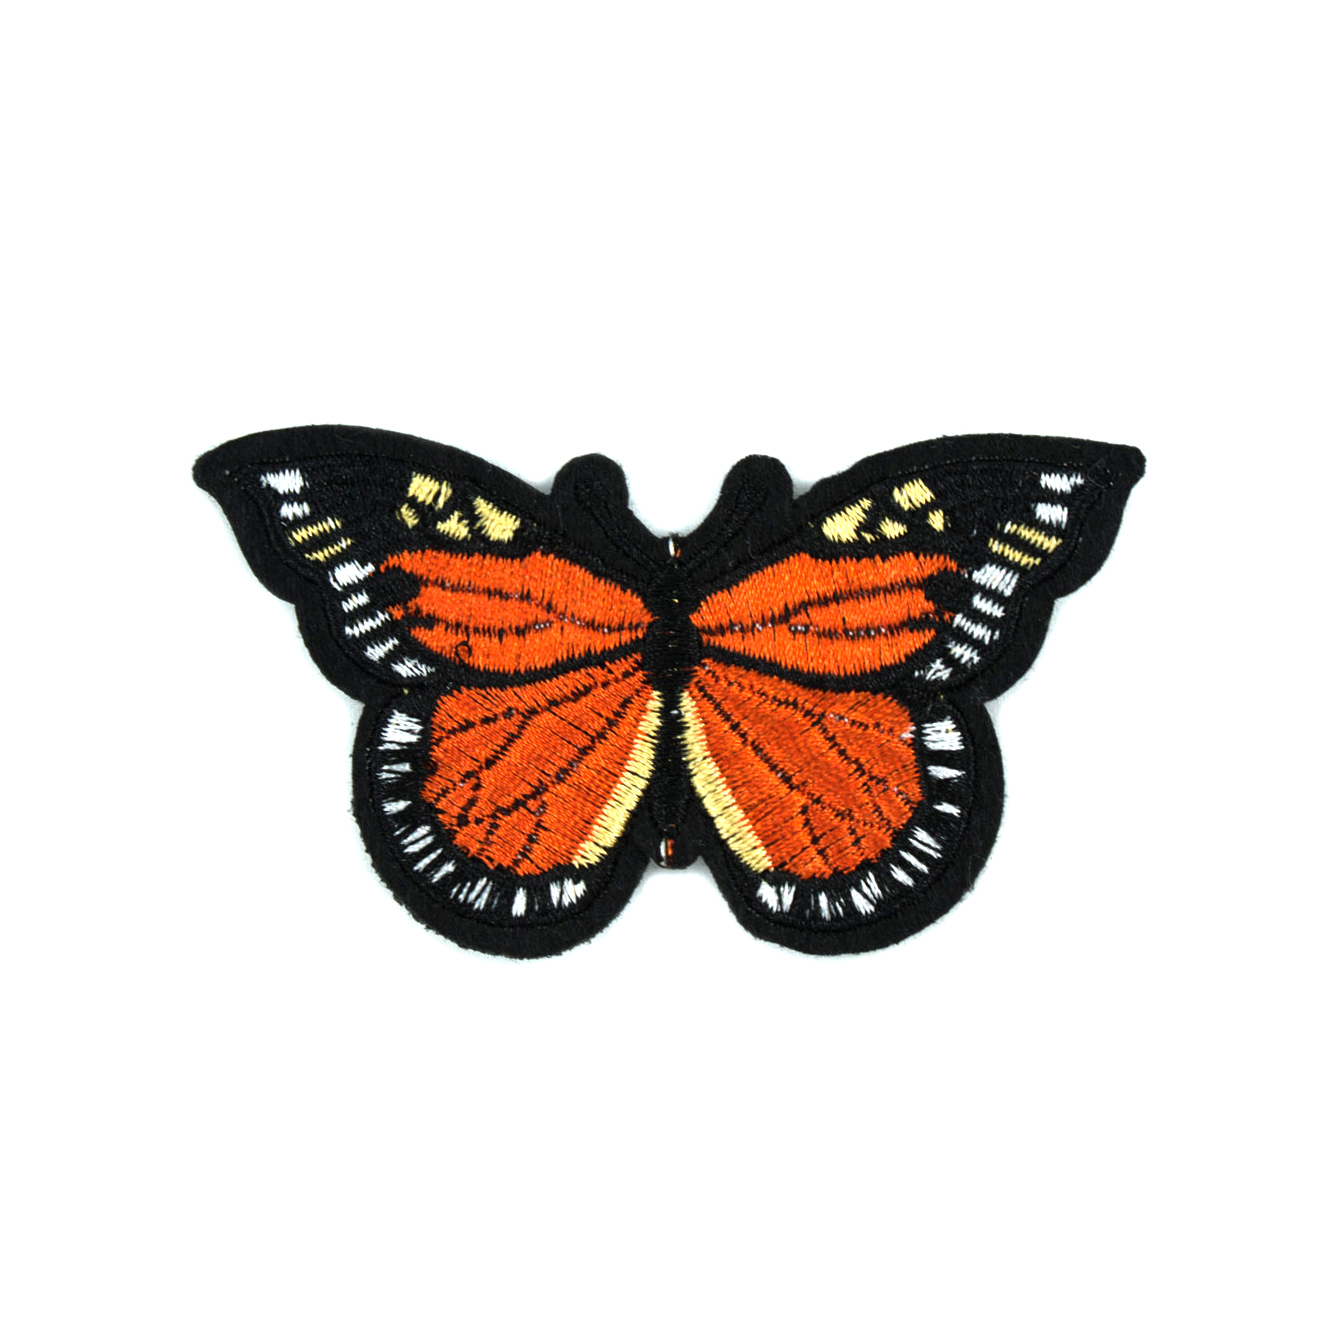 Нашивка тканевая Бабочка Монарх 8,5*5,3см, код товара 39145 - Нашивка Вышивка, Ткань